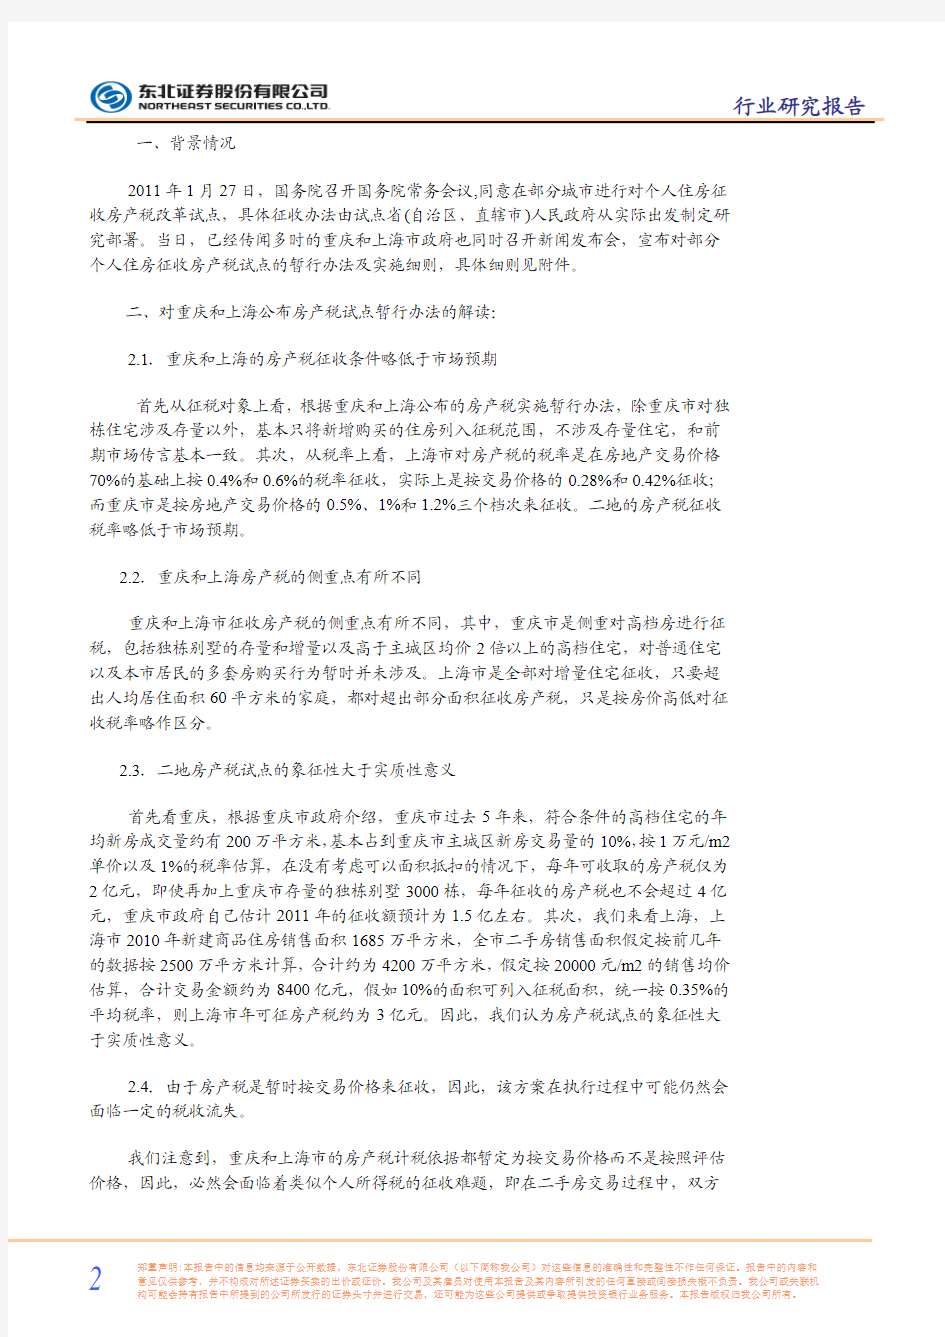 关于重庆和上海市正式公布房产税实施细则的点评